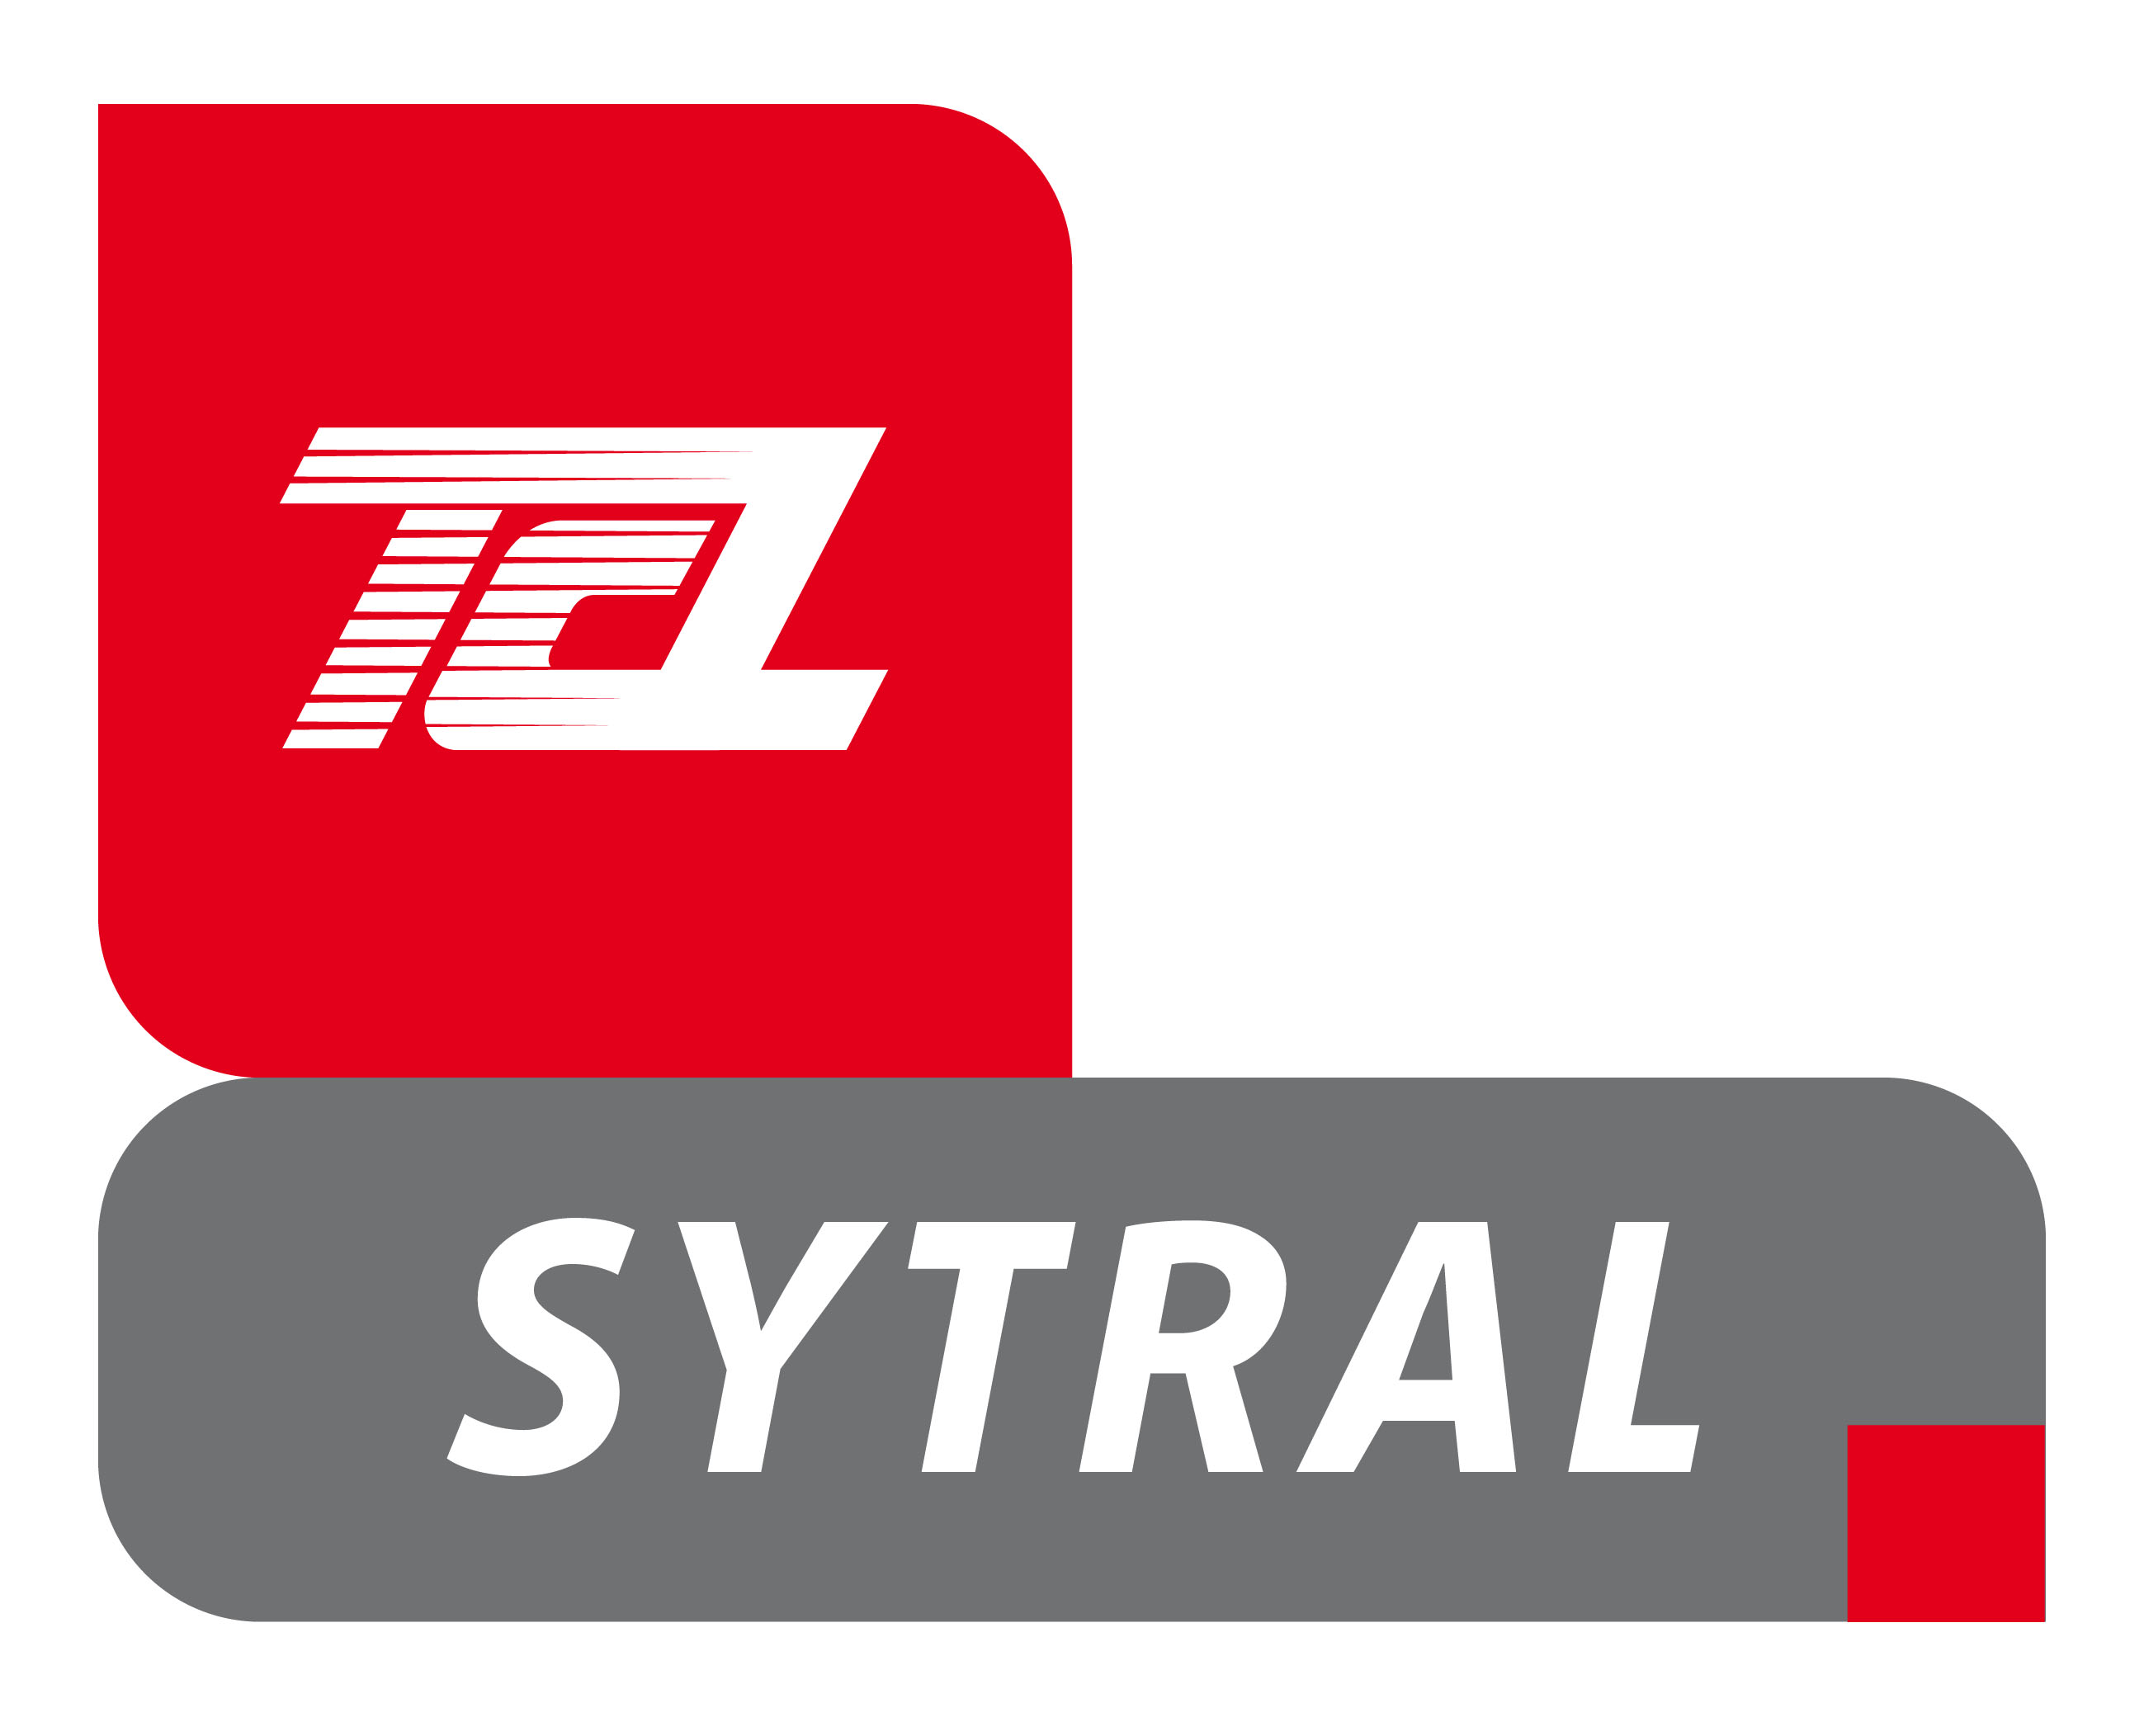 RÃ©sultat de recherche d'images pour "sytral logo"